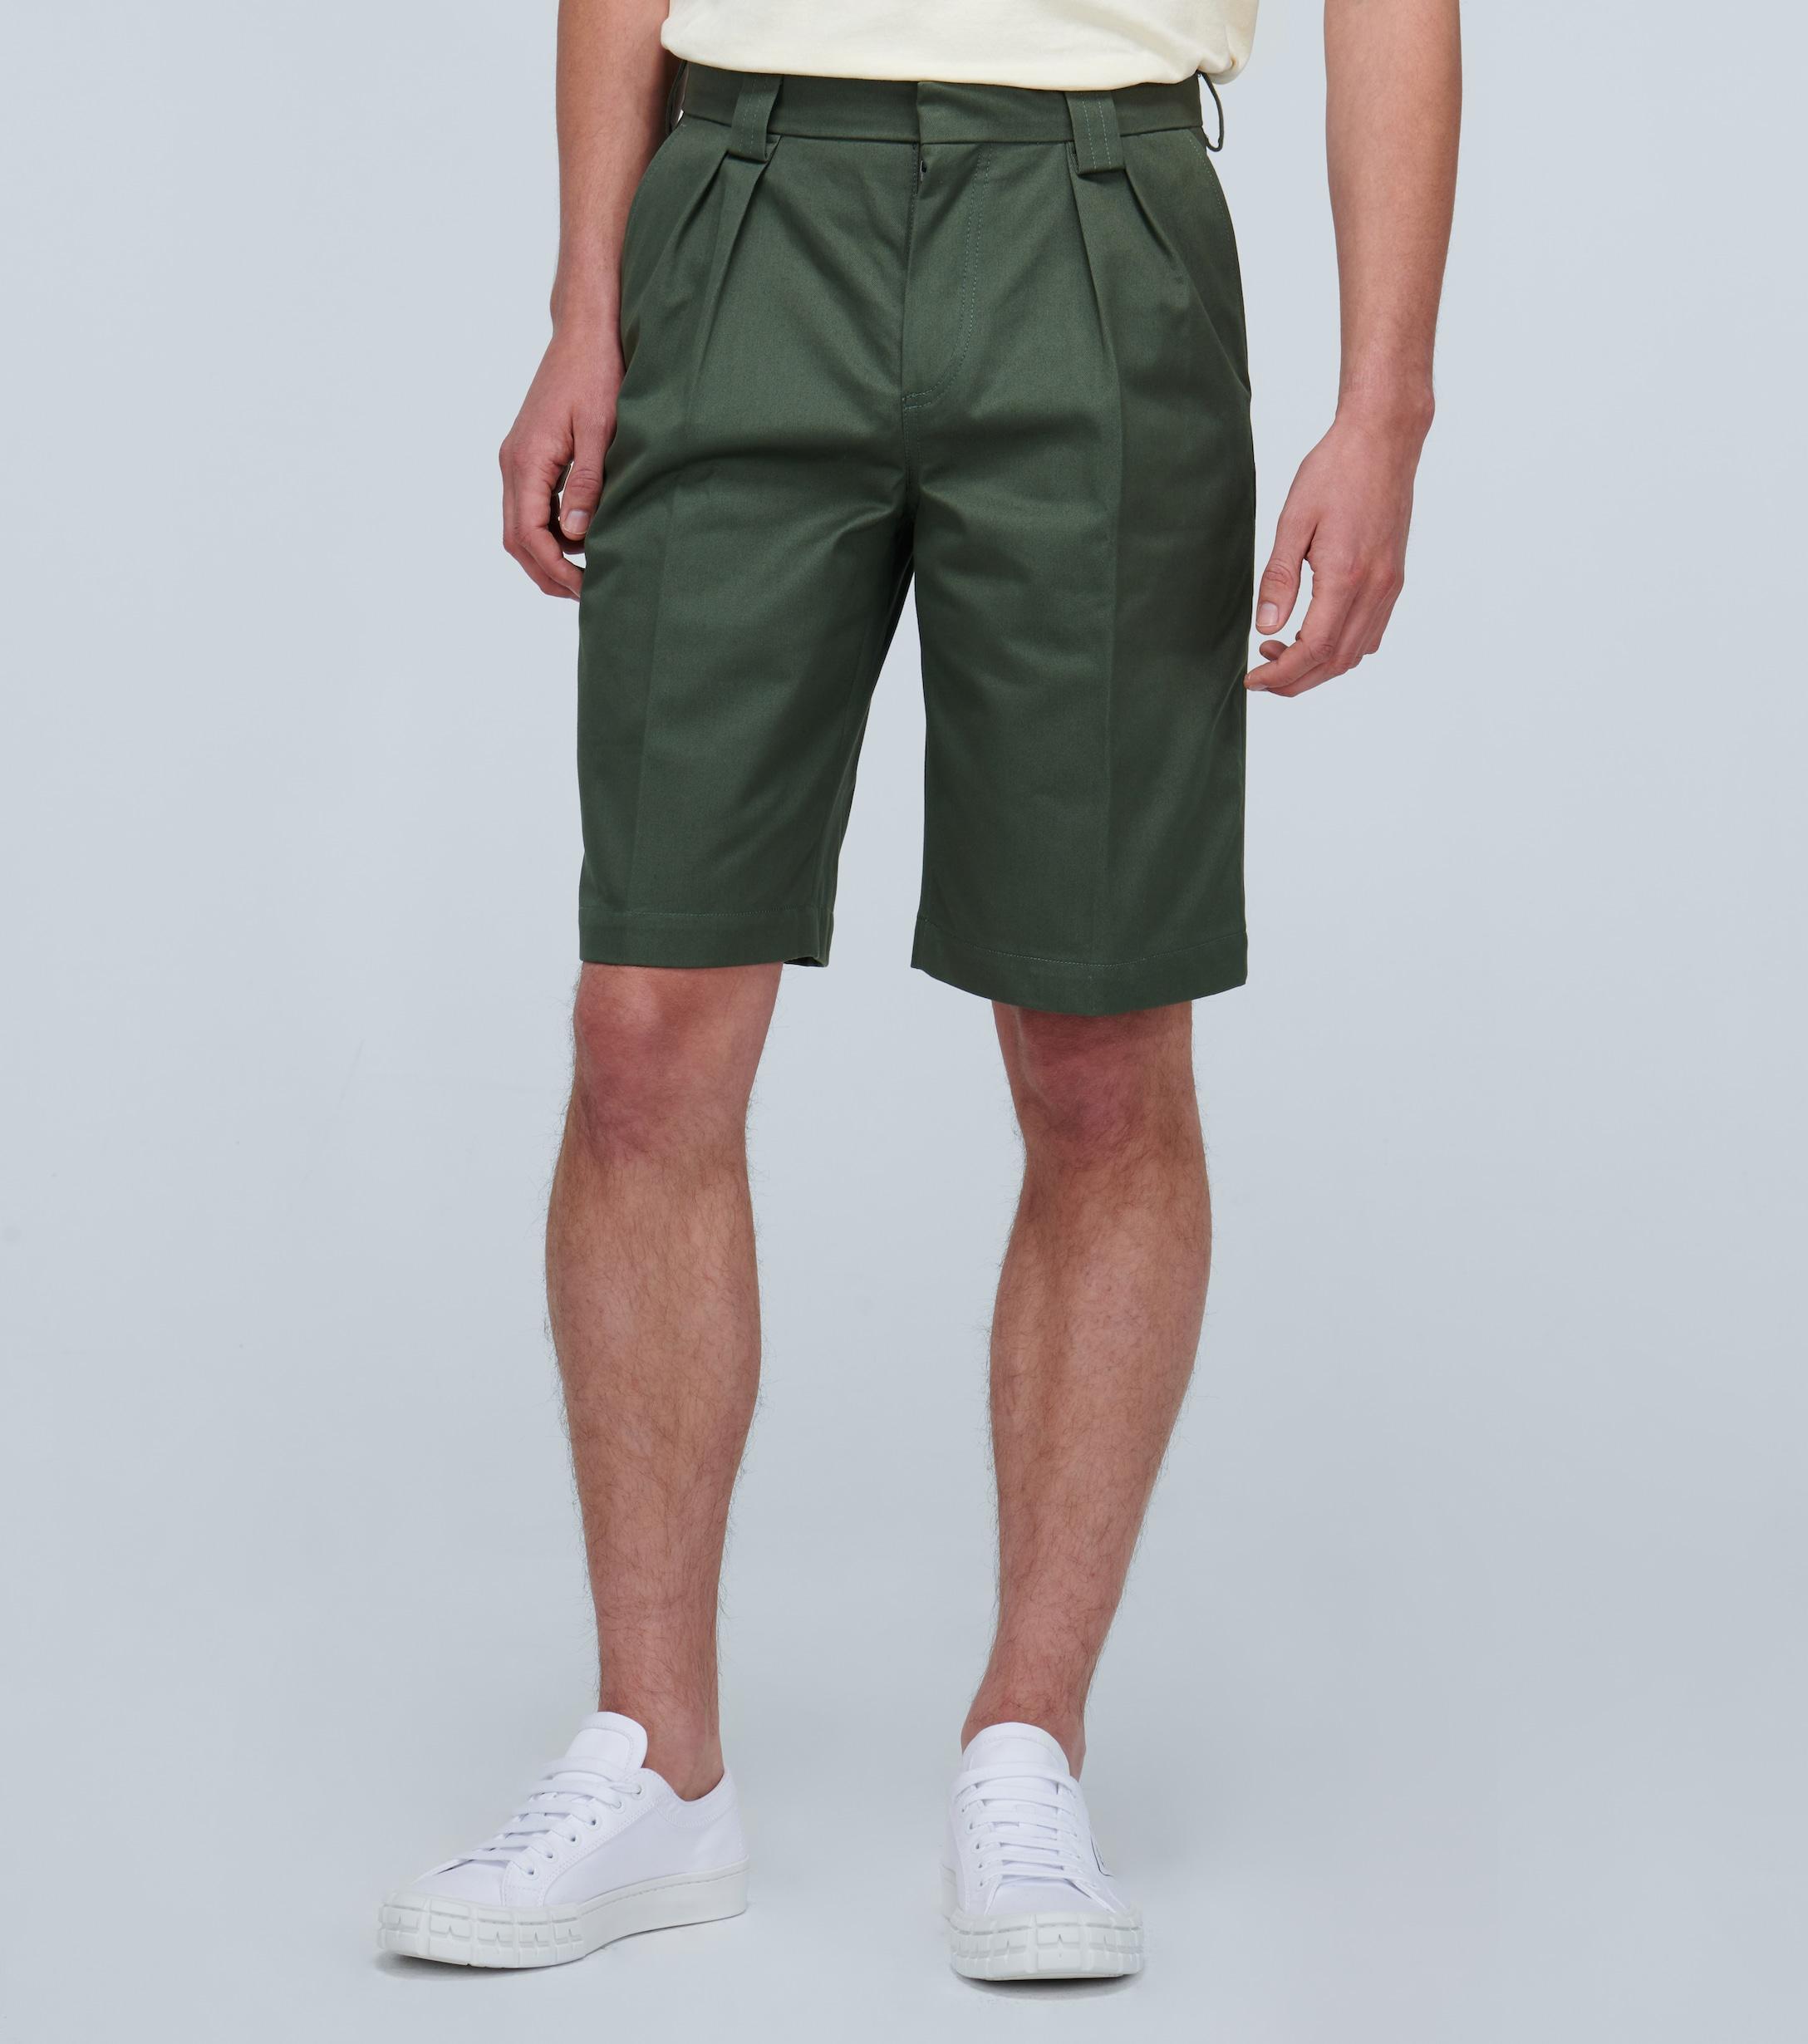 Jacquemus Cotton Le Short De Costume Shorts in Green for Men - Lyst